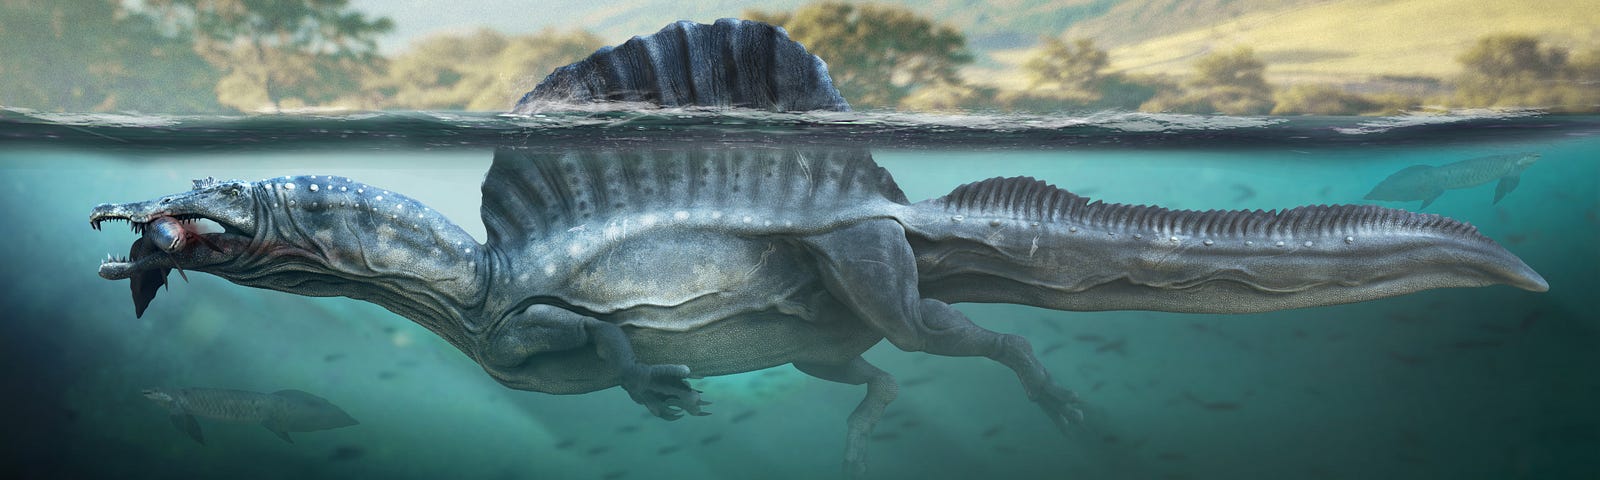 Spinosaurus aegypticus reconstruction